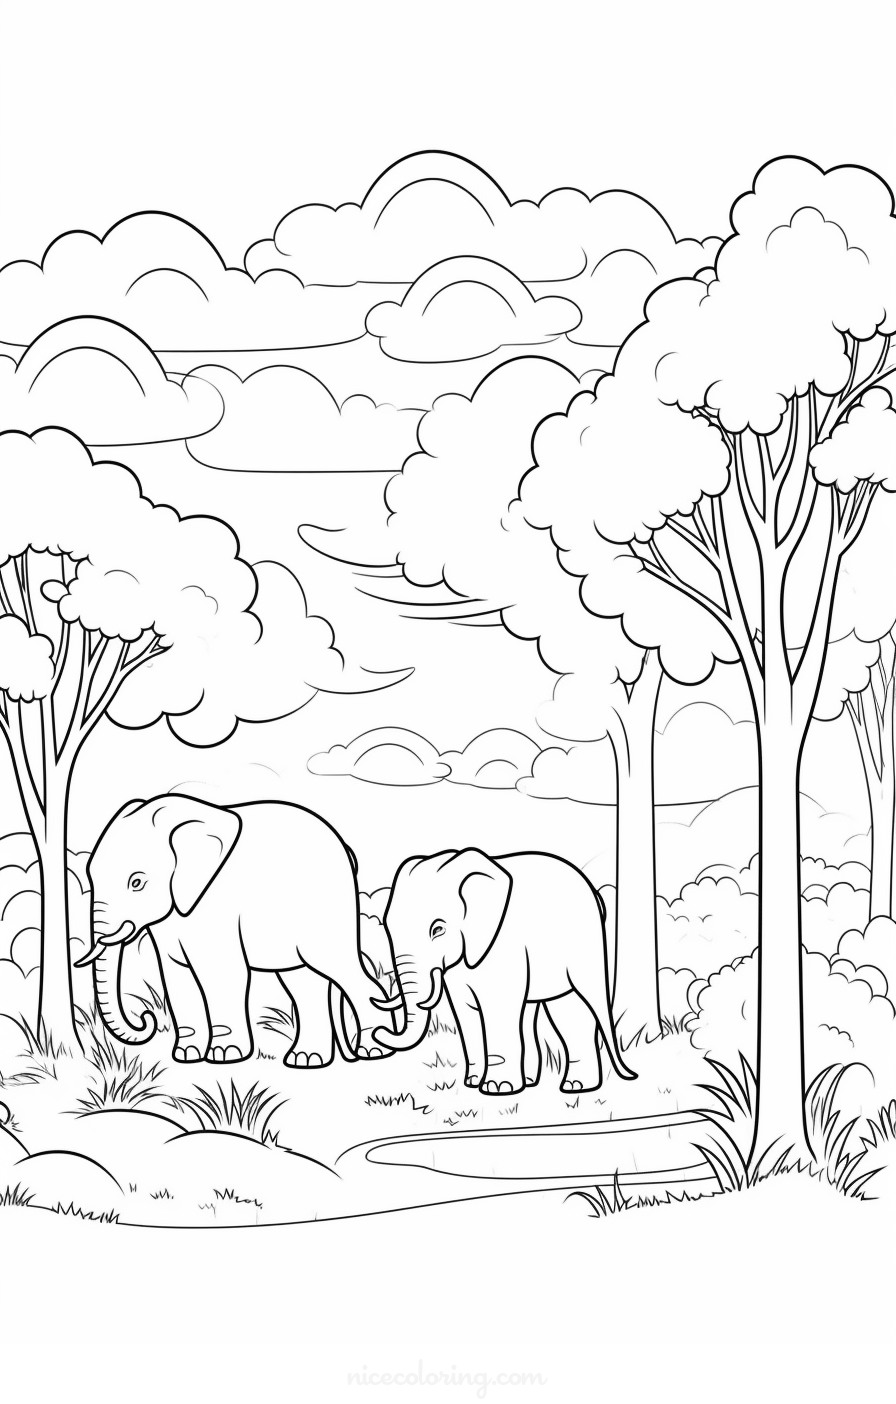 宁静环境中的大象家庭